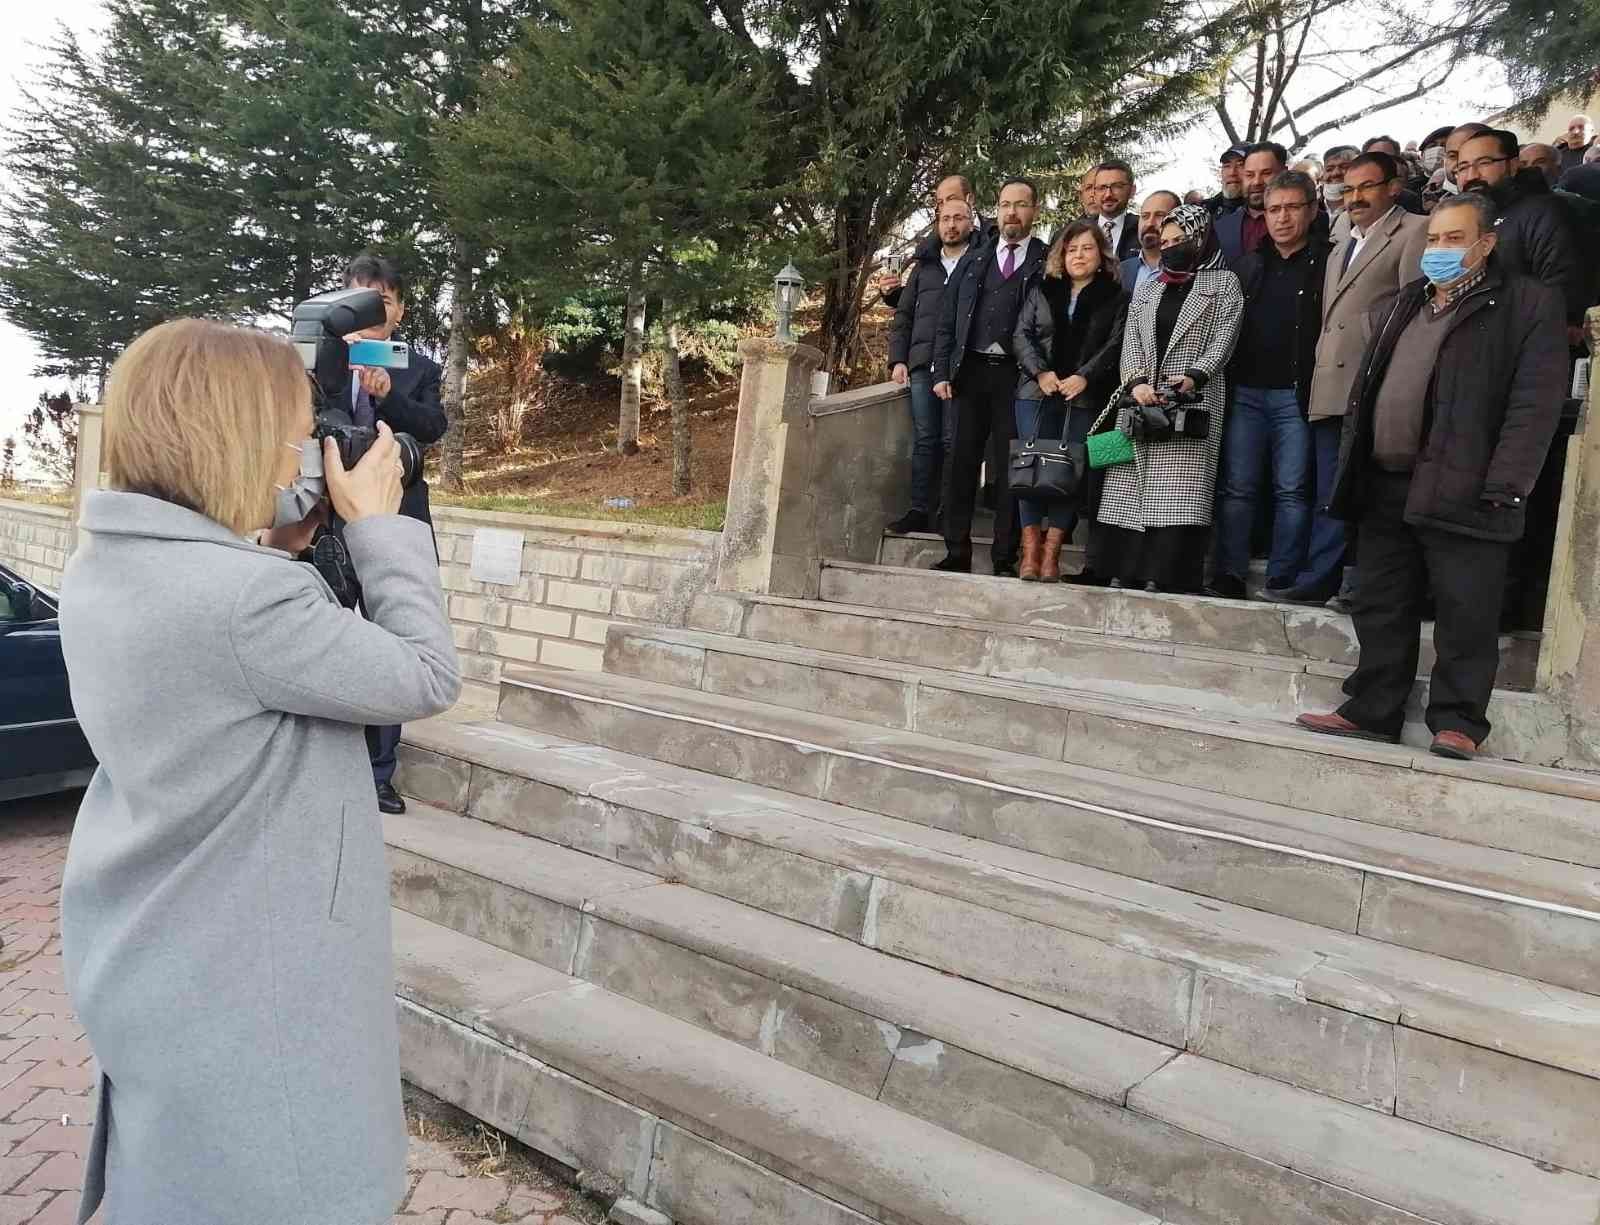 Nevşehir Valisi gazetecilerin fotoğrafını çekti #nevsehir